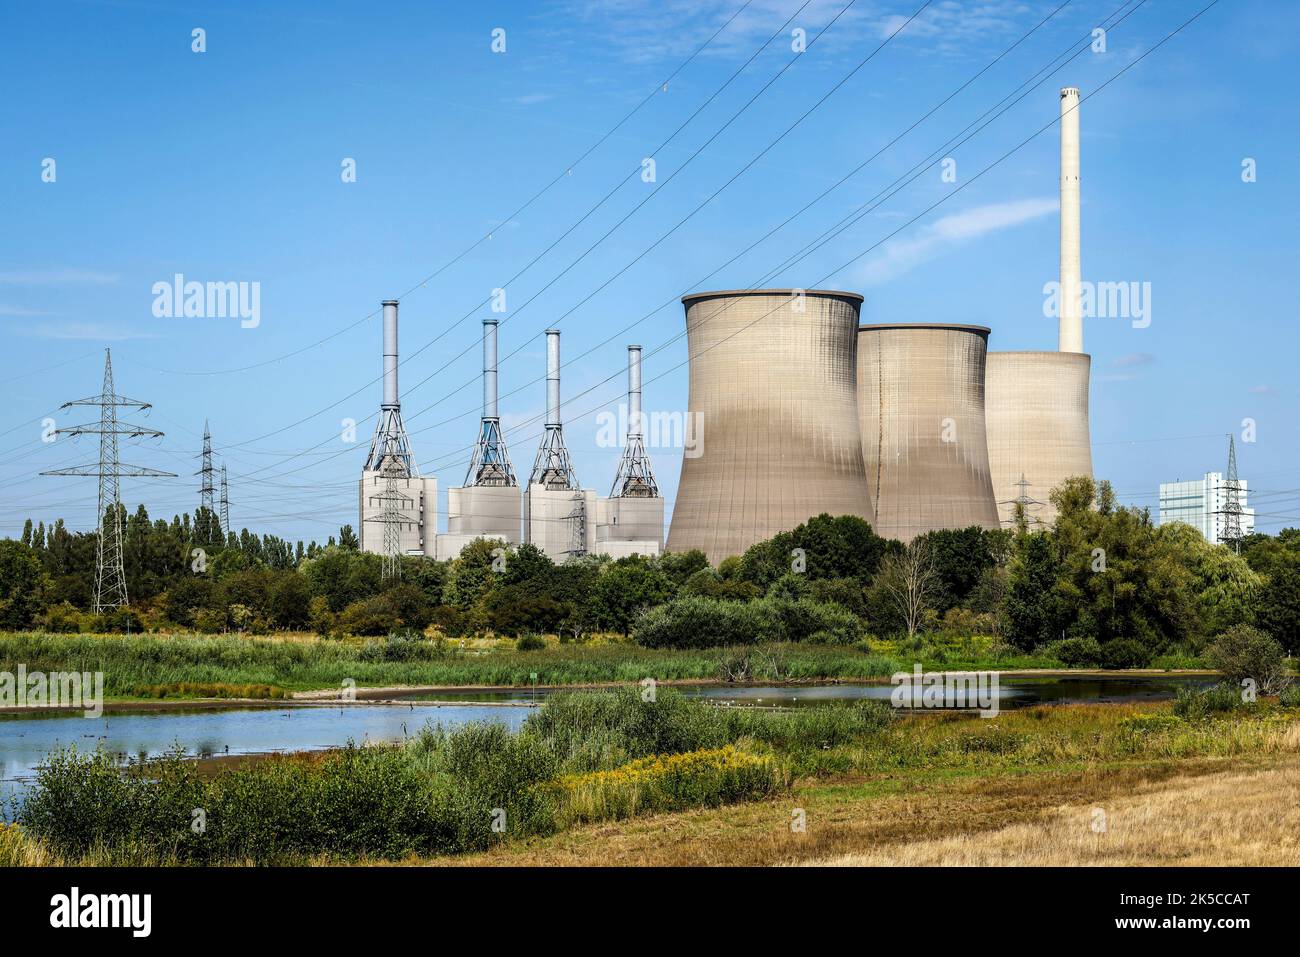 Gersteinwerk power plant, RWE, natural gas steam power plant, Werne, North Rhine-Westphalia, Germany, Europe Stock Photo